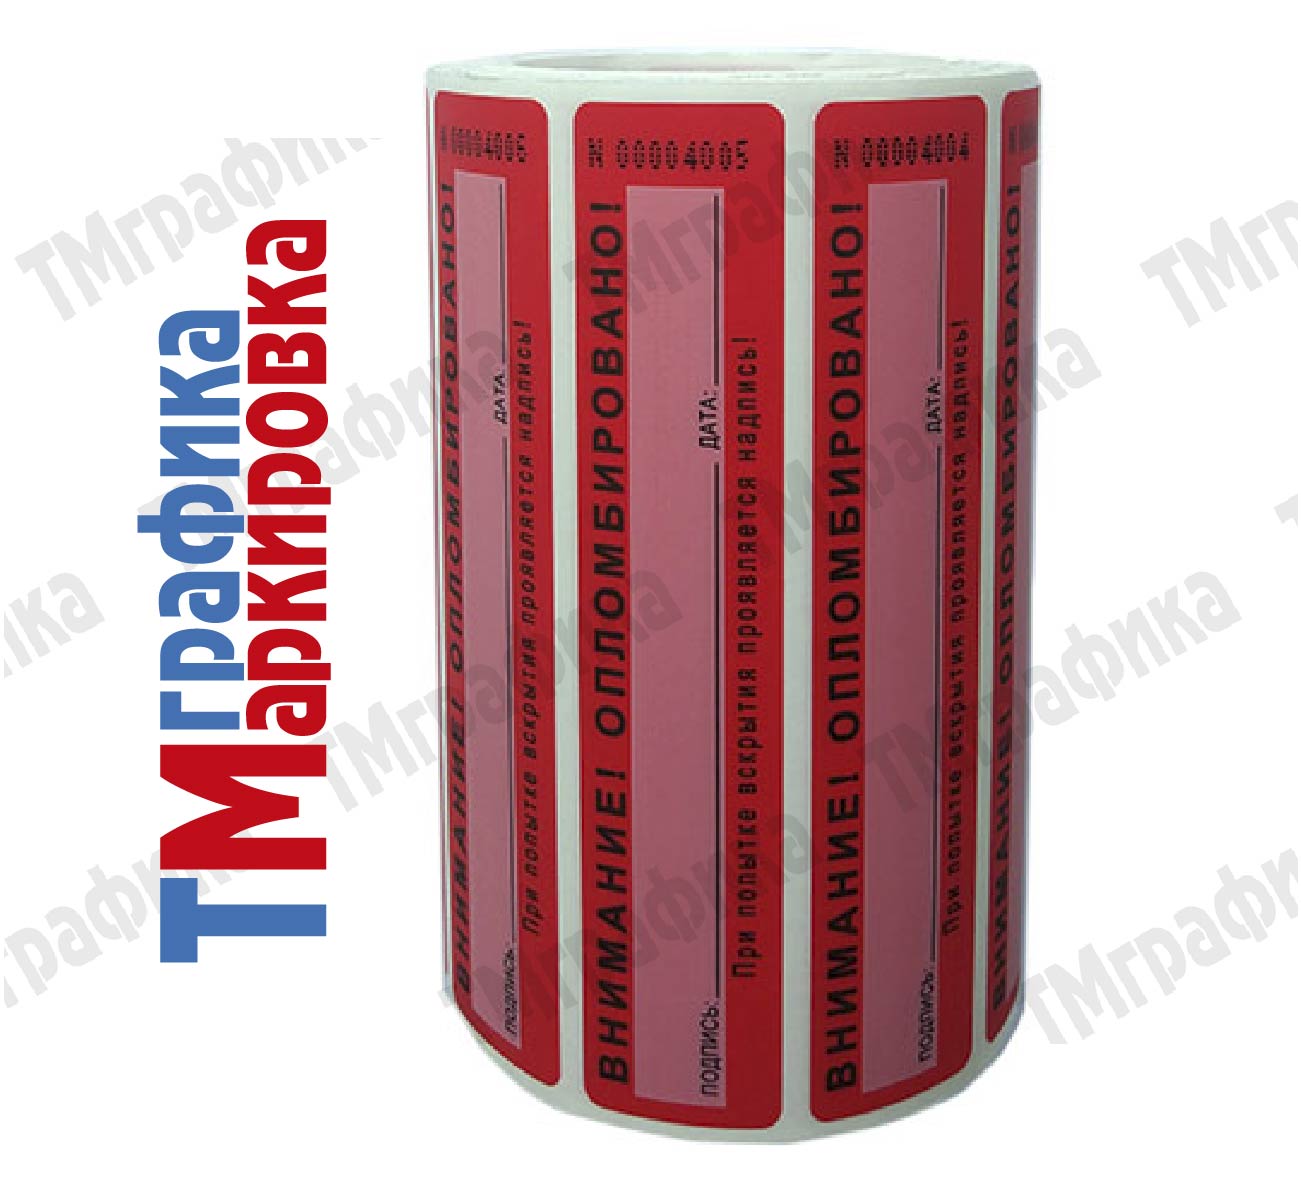 100х20 мм void красный с белым окном 500 шт. пломба наклейка - 3 702.80 руб.